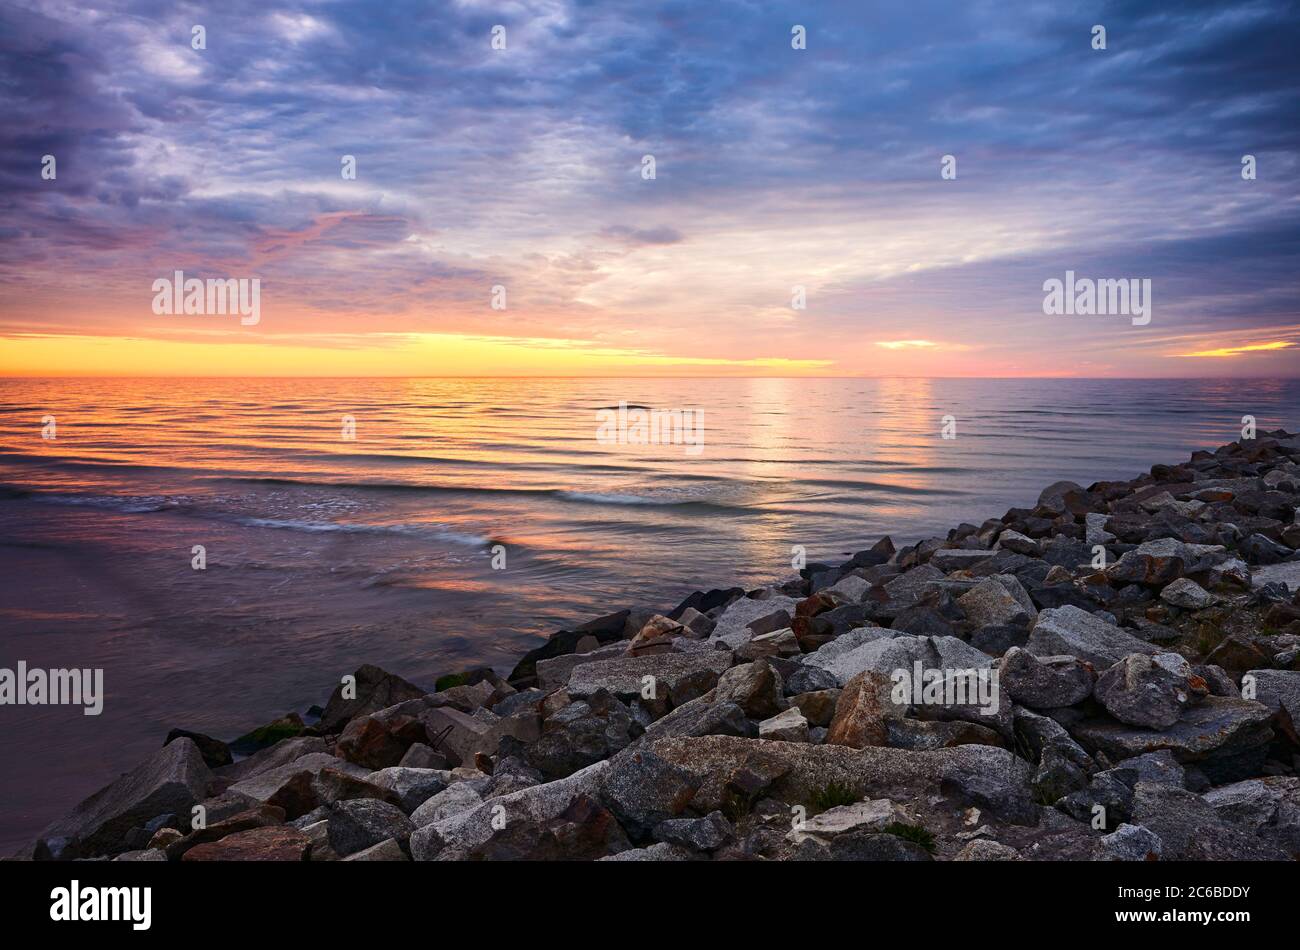 Mar Báltico costa rocosa al atardecer, Mrzezyno, Polonia. Foto de stock